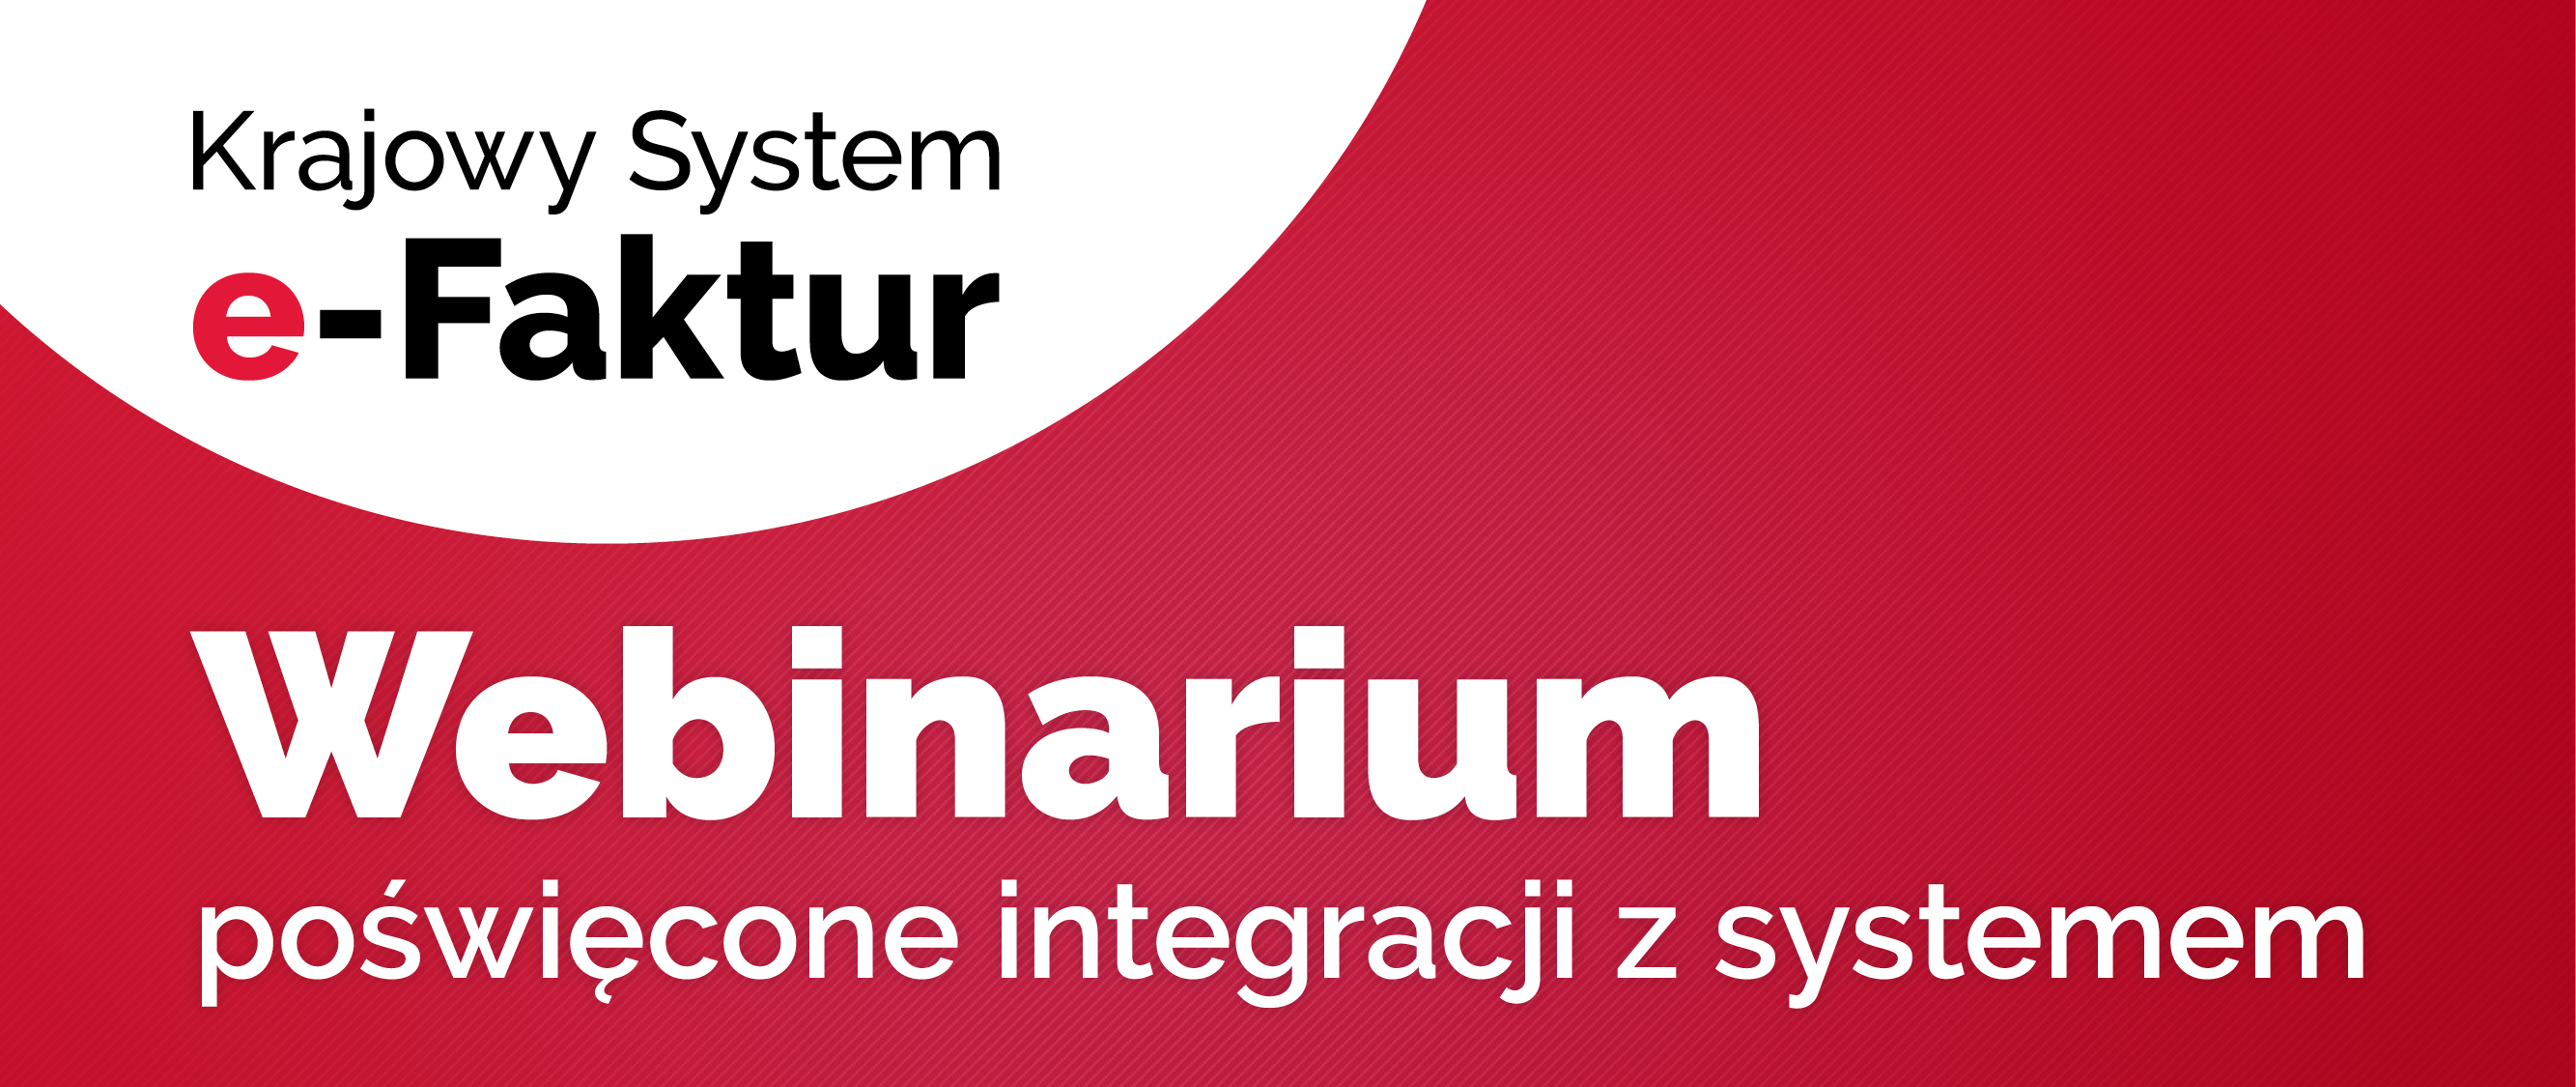 Krajowy System e-Faktur. Webinarium poświęcone integracji z systemem.